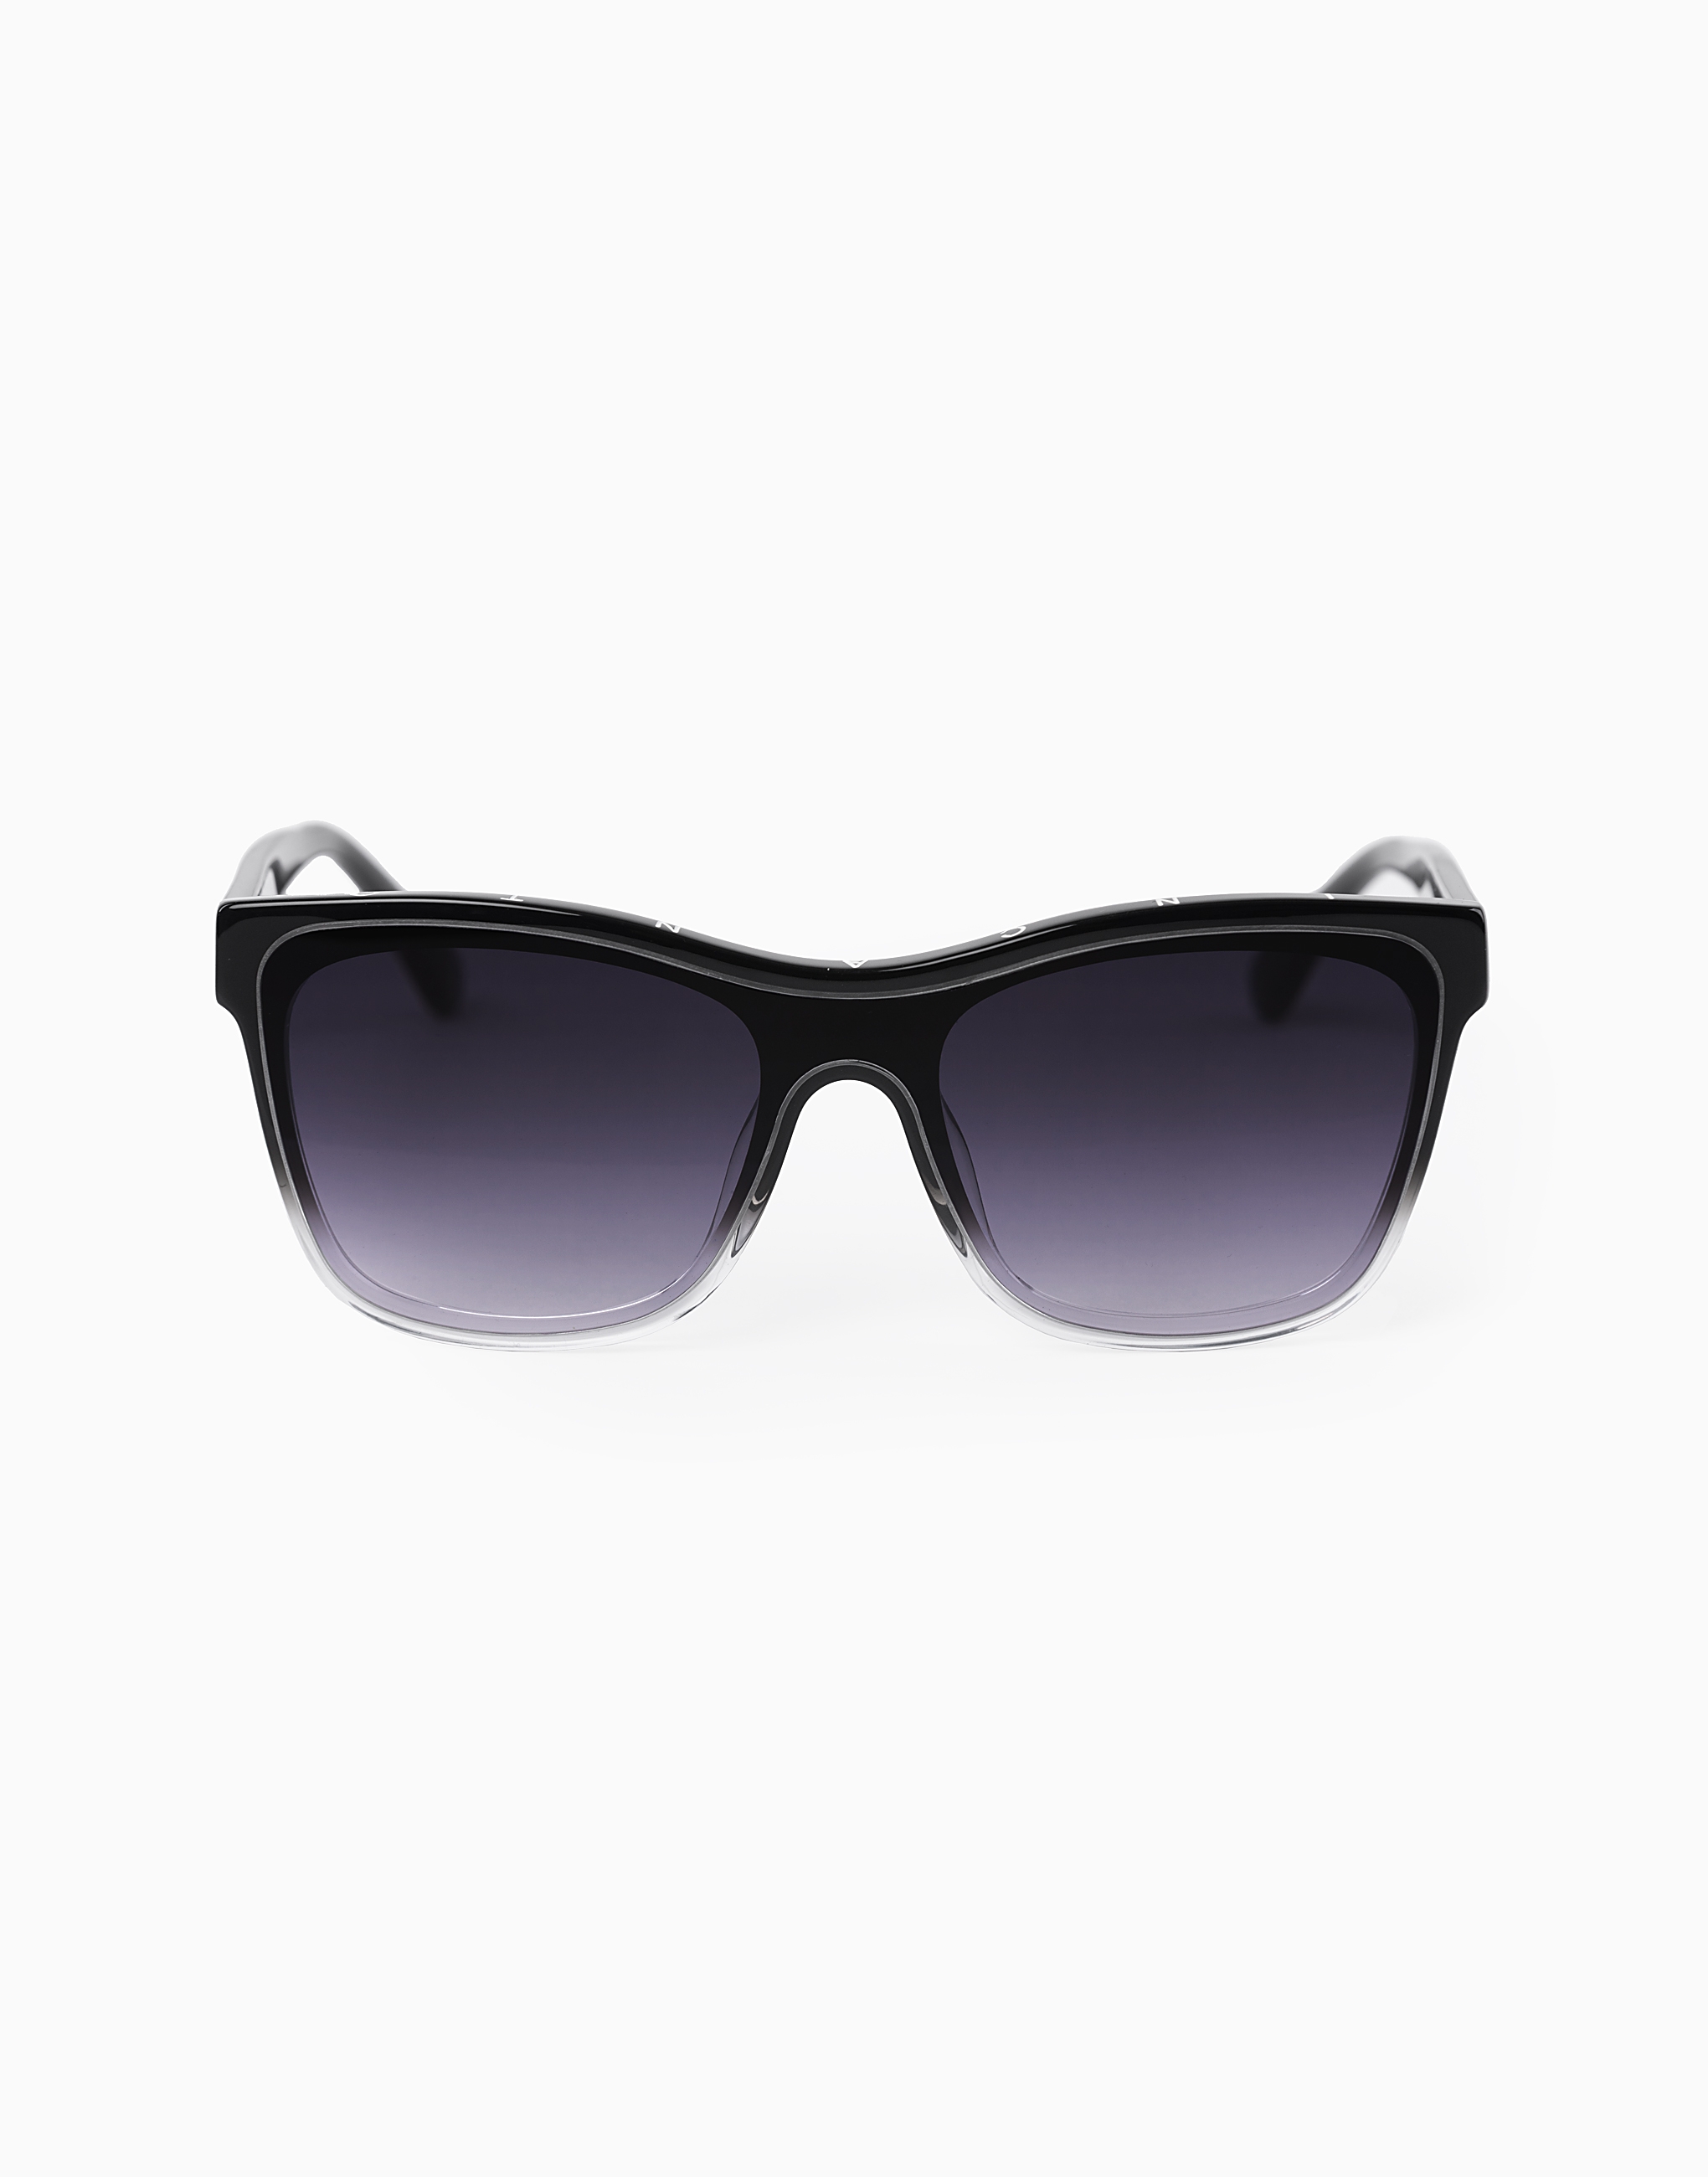 Солнцезащитные очки Sunglasses солнцезащитные очки explore sunglasses unisex rapha цвет dark navy purple green lens